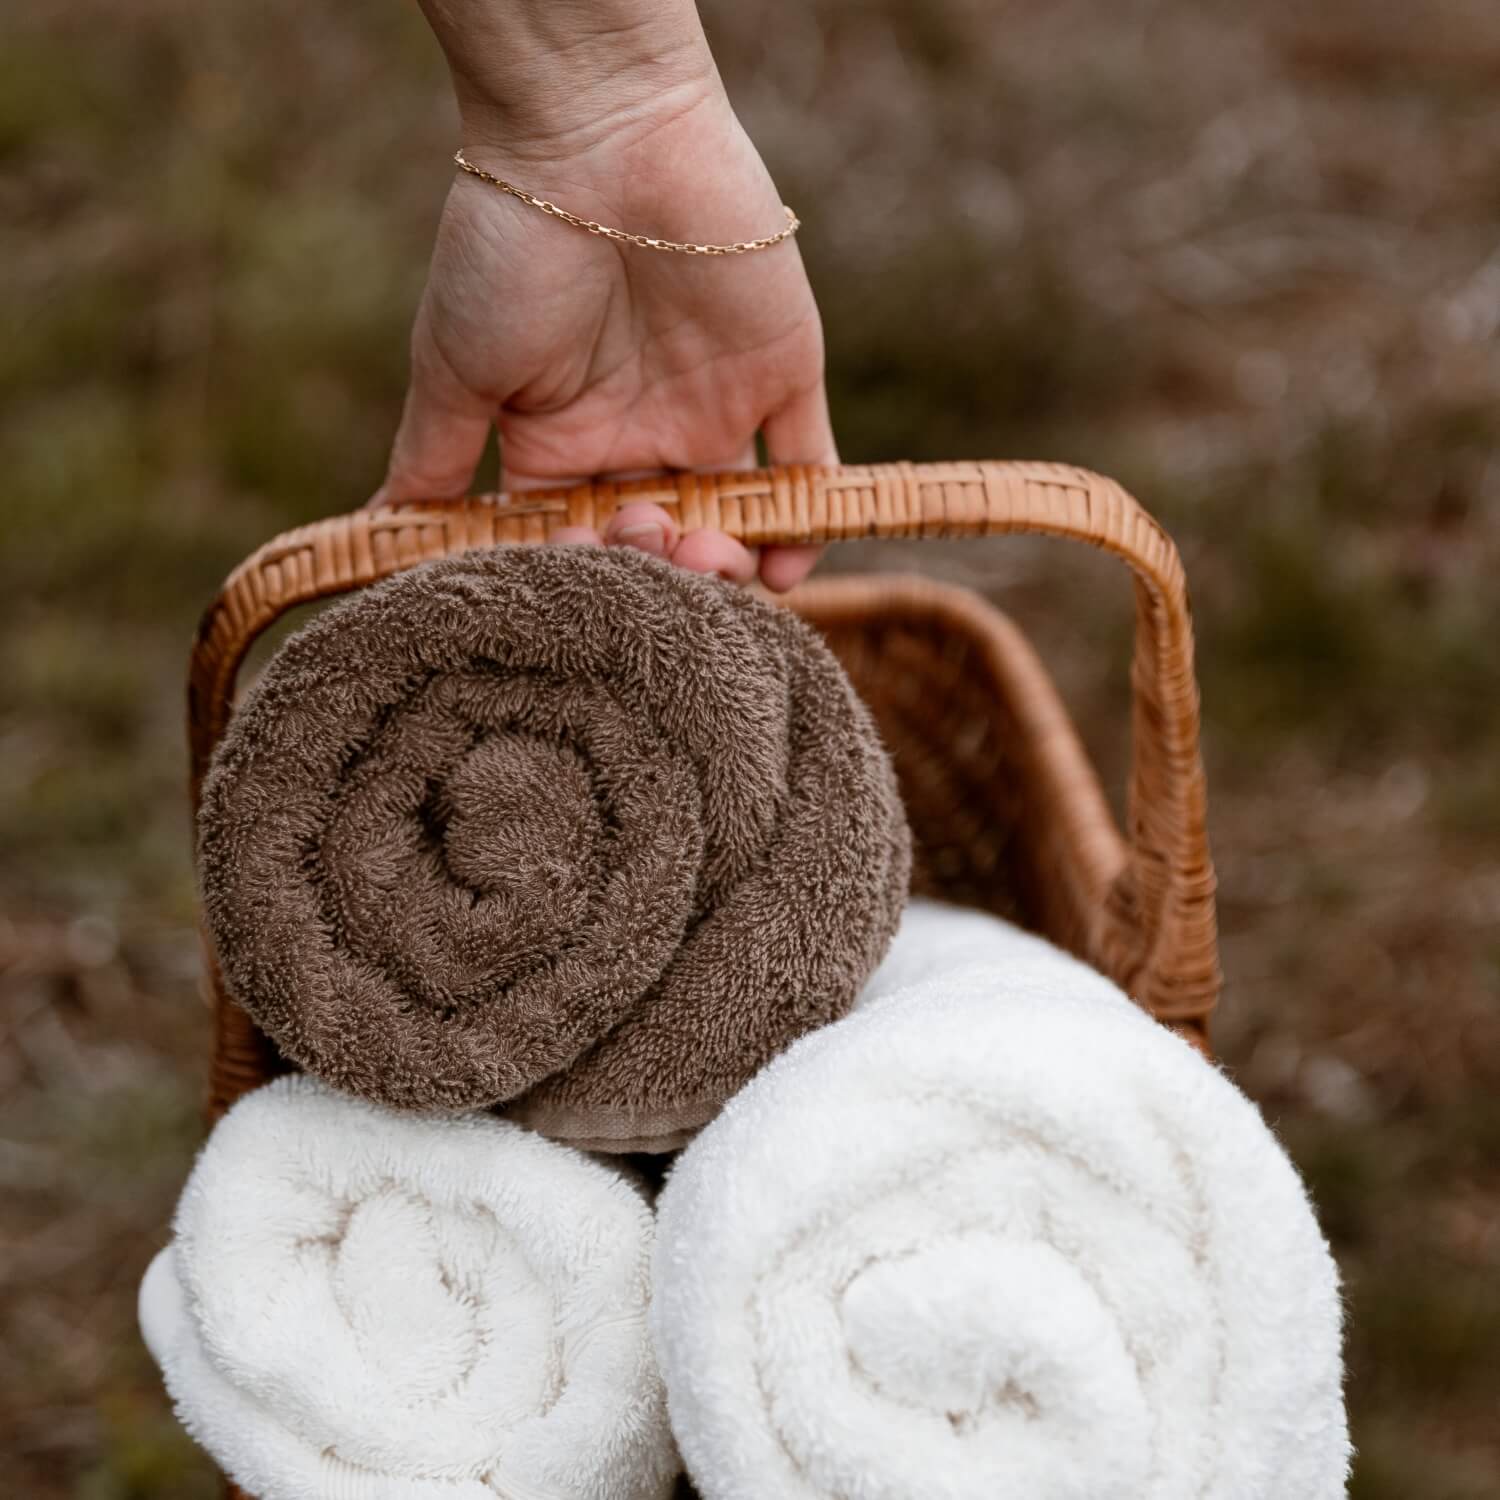 To hvide håndklæder og et brunt håndklæde i en brun, vævet kurv, der bliver båret af hånden på en person